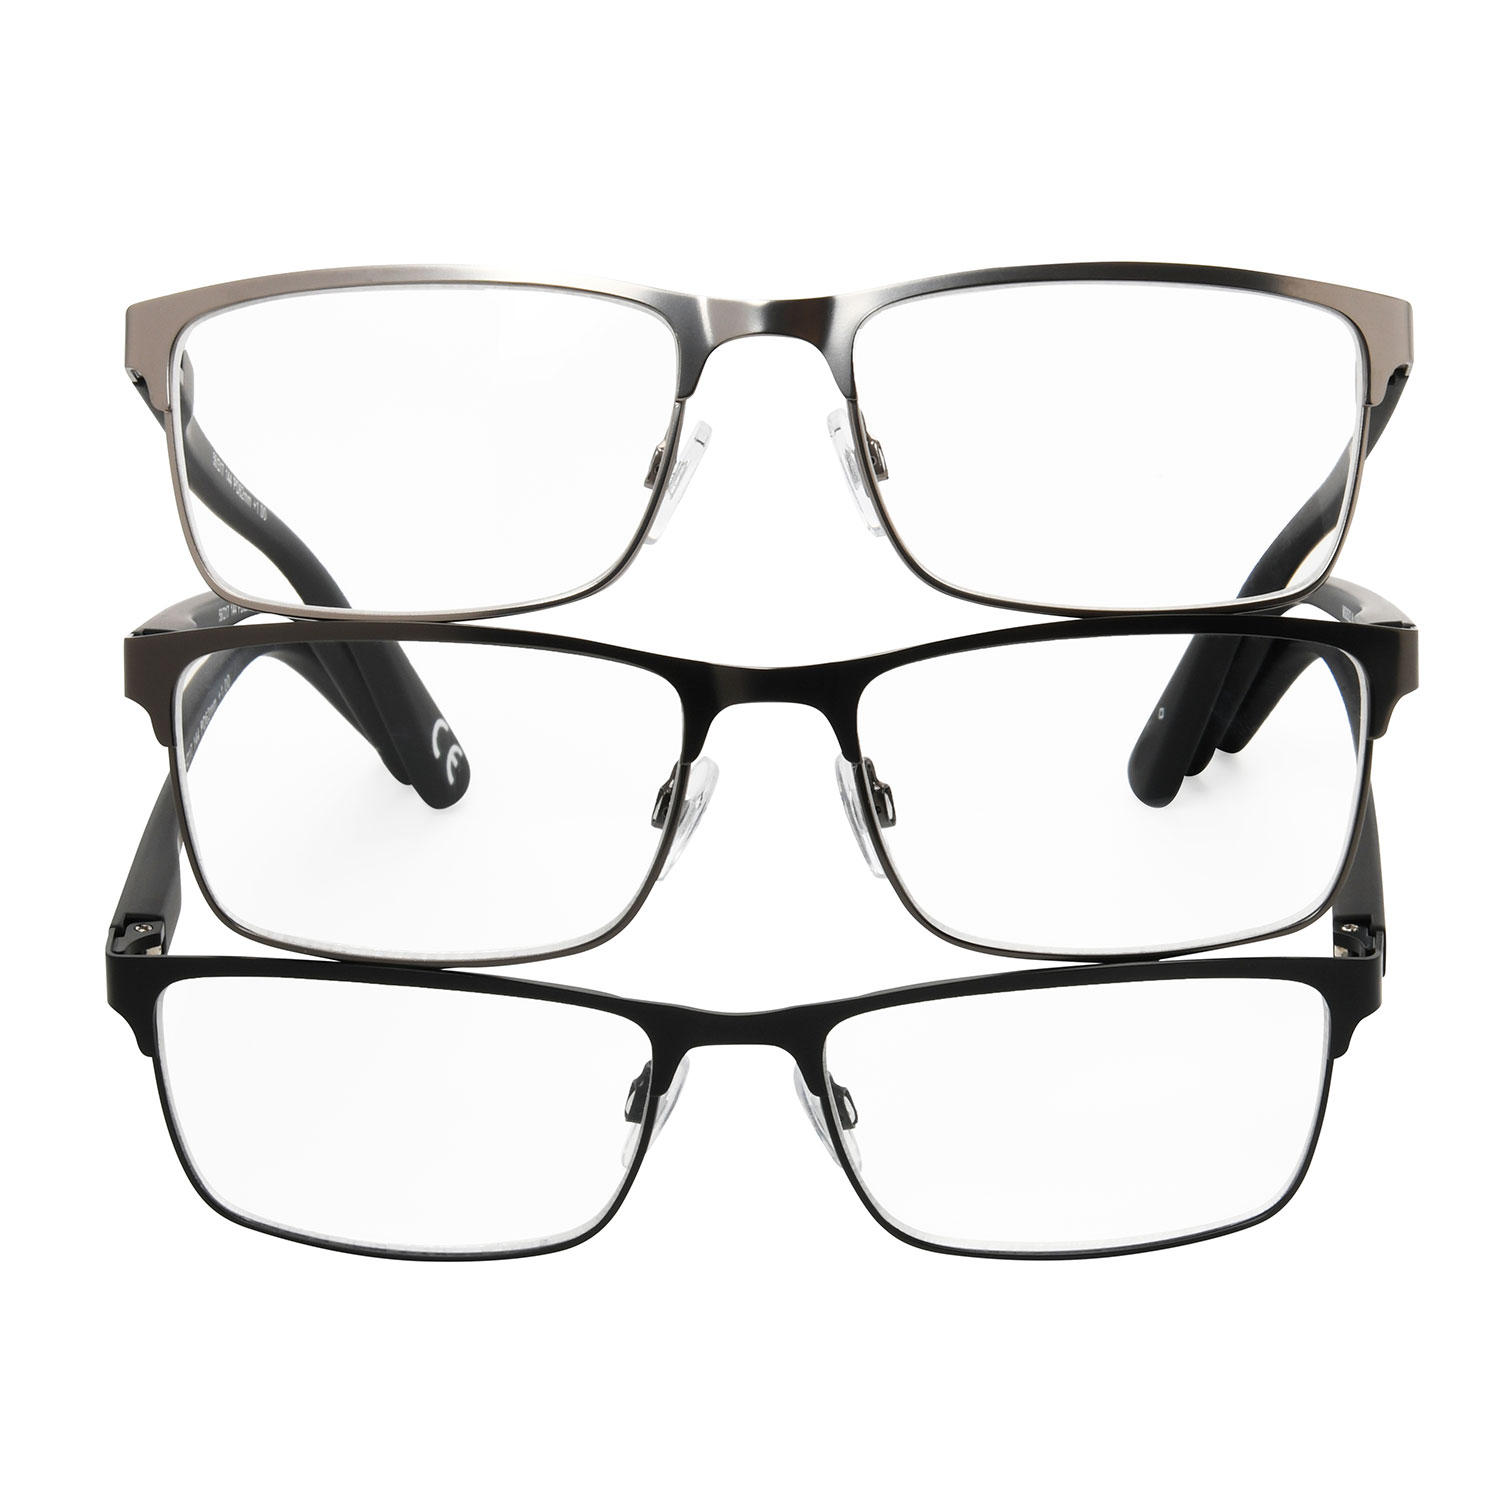 MEMBERS MARK Rectangular Metal Reading Glasses (3 pack)